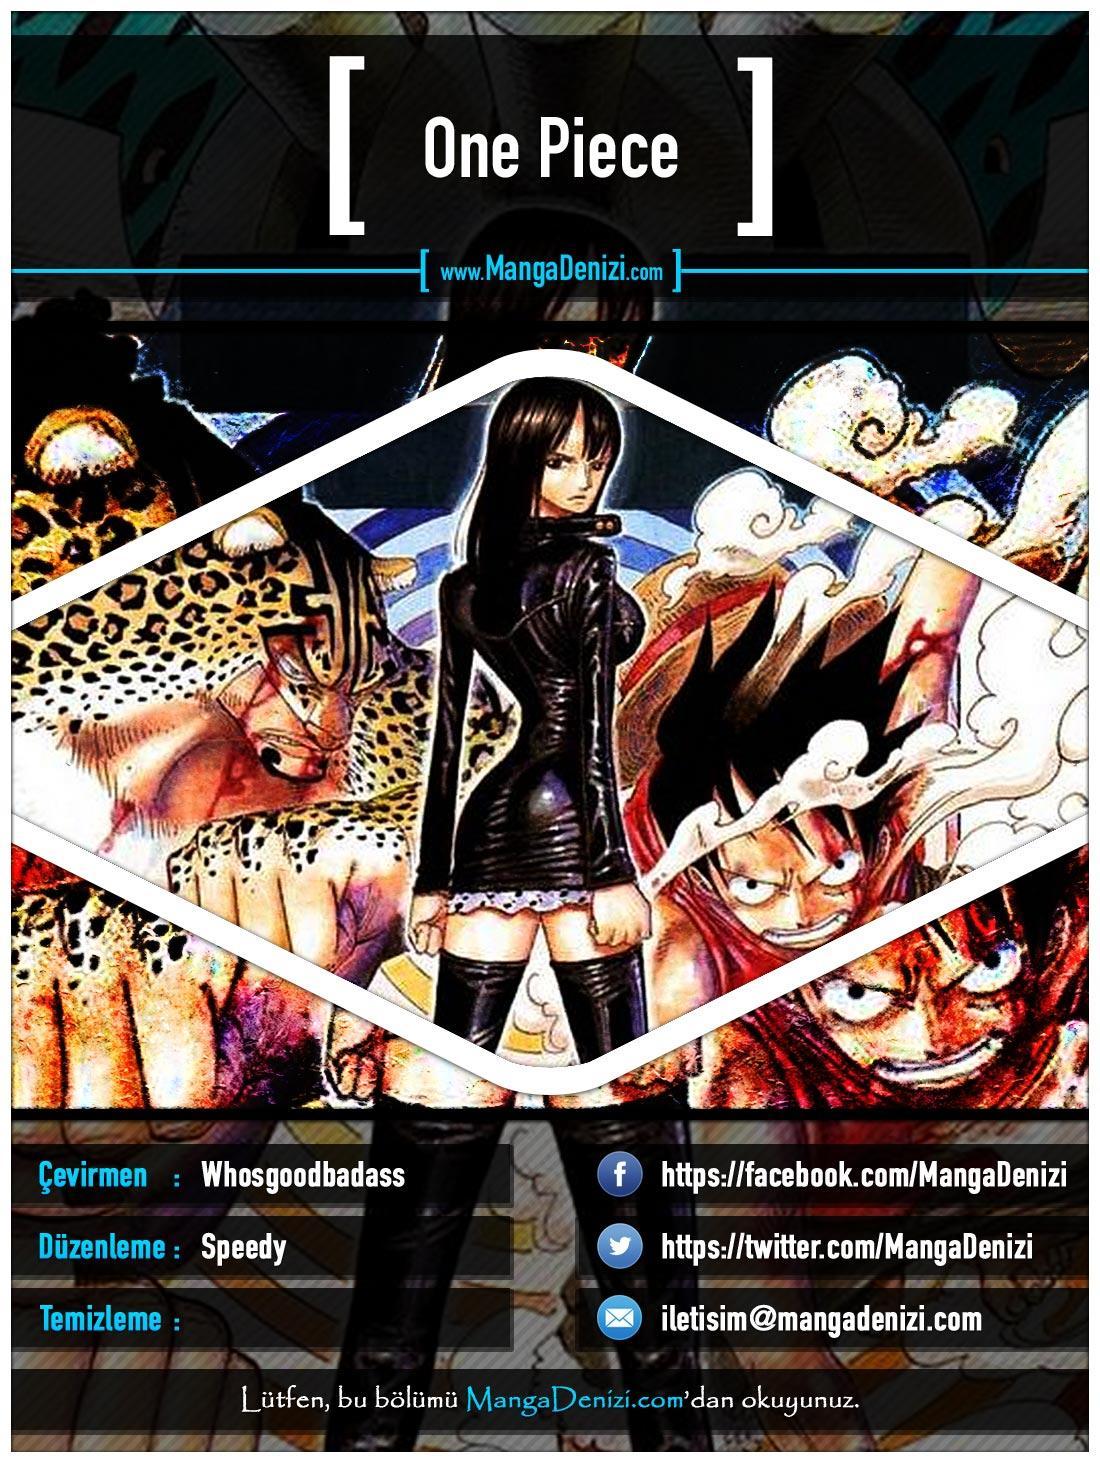 One Piece [Renkli] mangasının 0405 bölümünün 1. sayfasını okuyorsunuz.